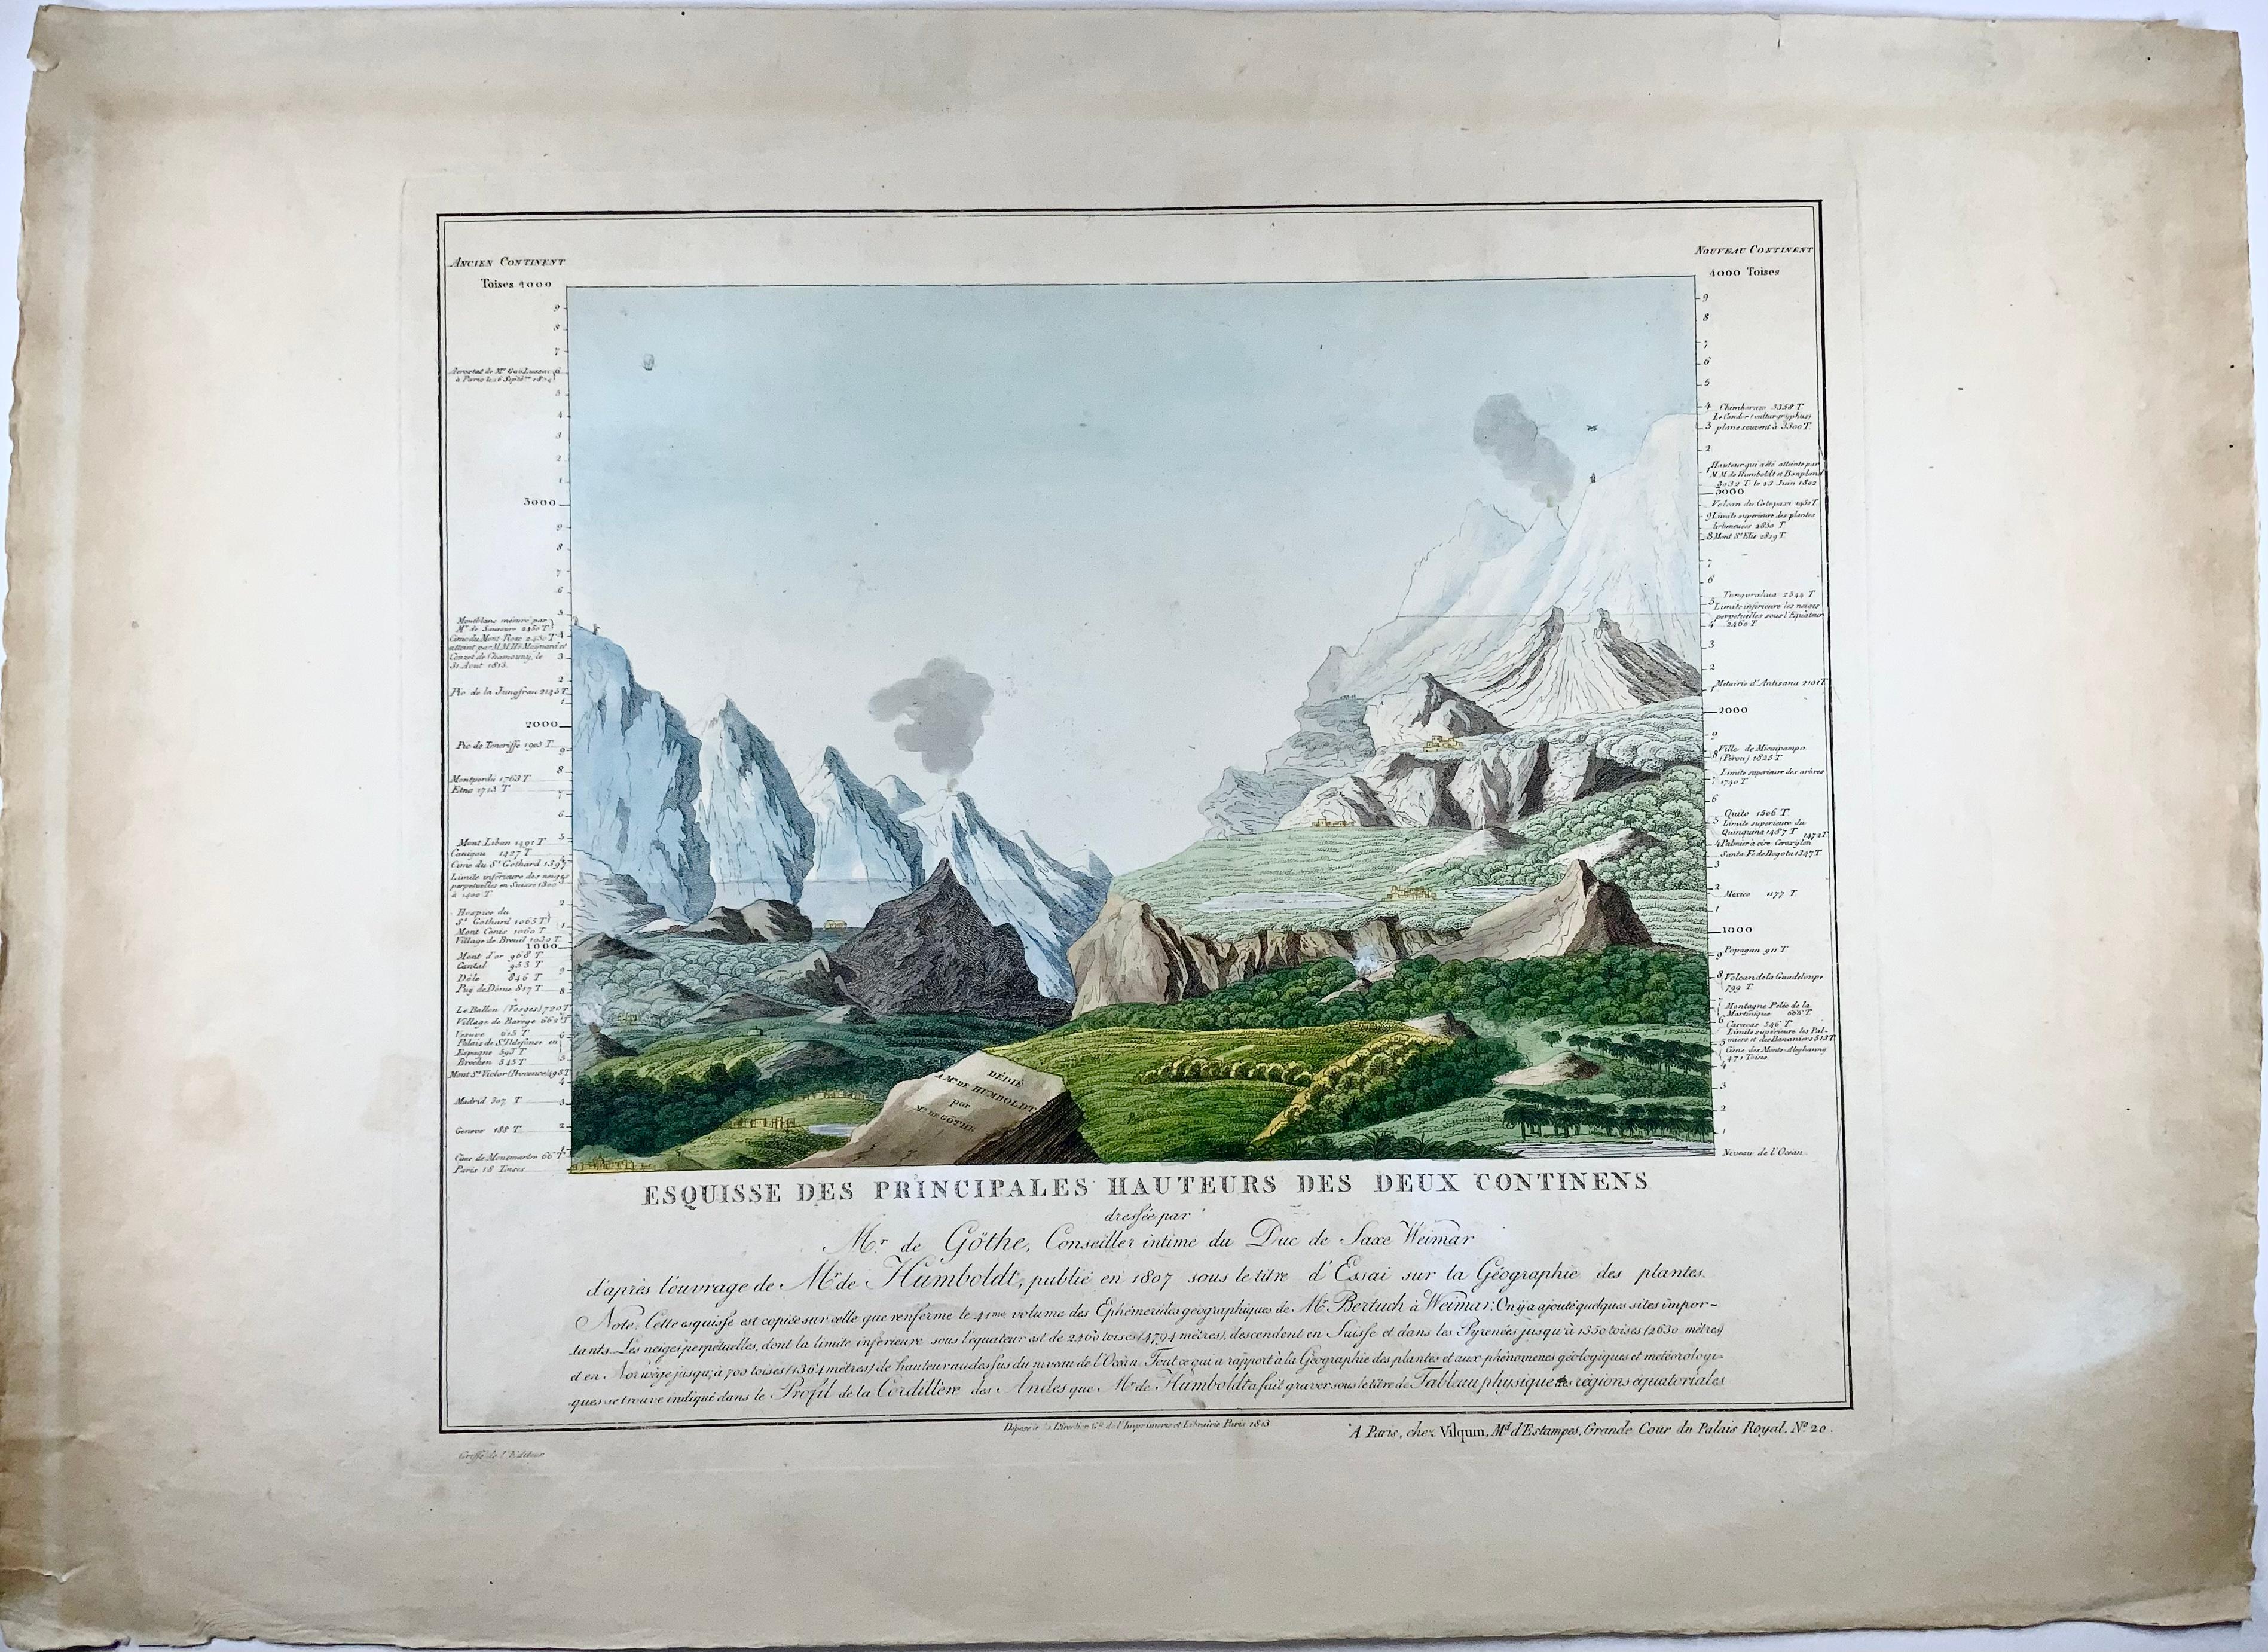 Esquisse des principales hauteurs des deux continens dressée par Mr. de Göthe,... d'après l'ouvrage de Mr. de Humboldt, publié en 1807 sous le titre d'Essai sur la géographie des plantes

Goethe, Johann Wolfgang von (1749-1832).